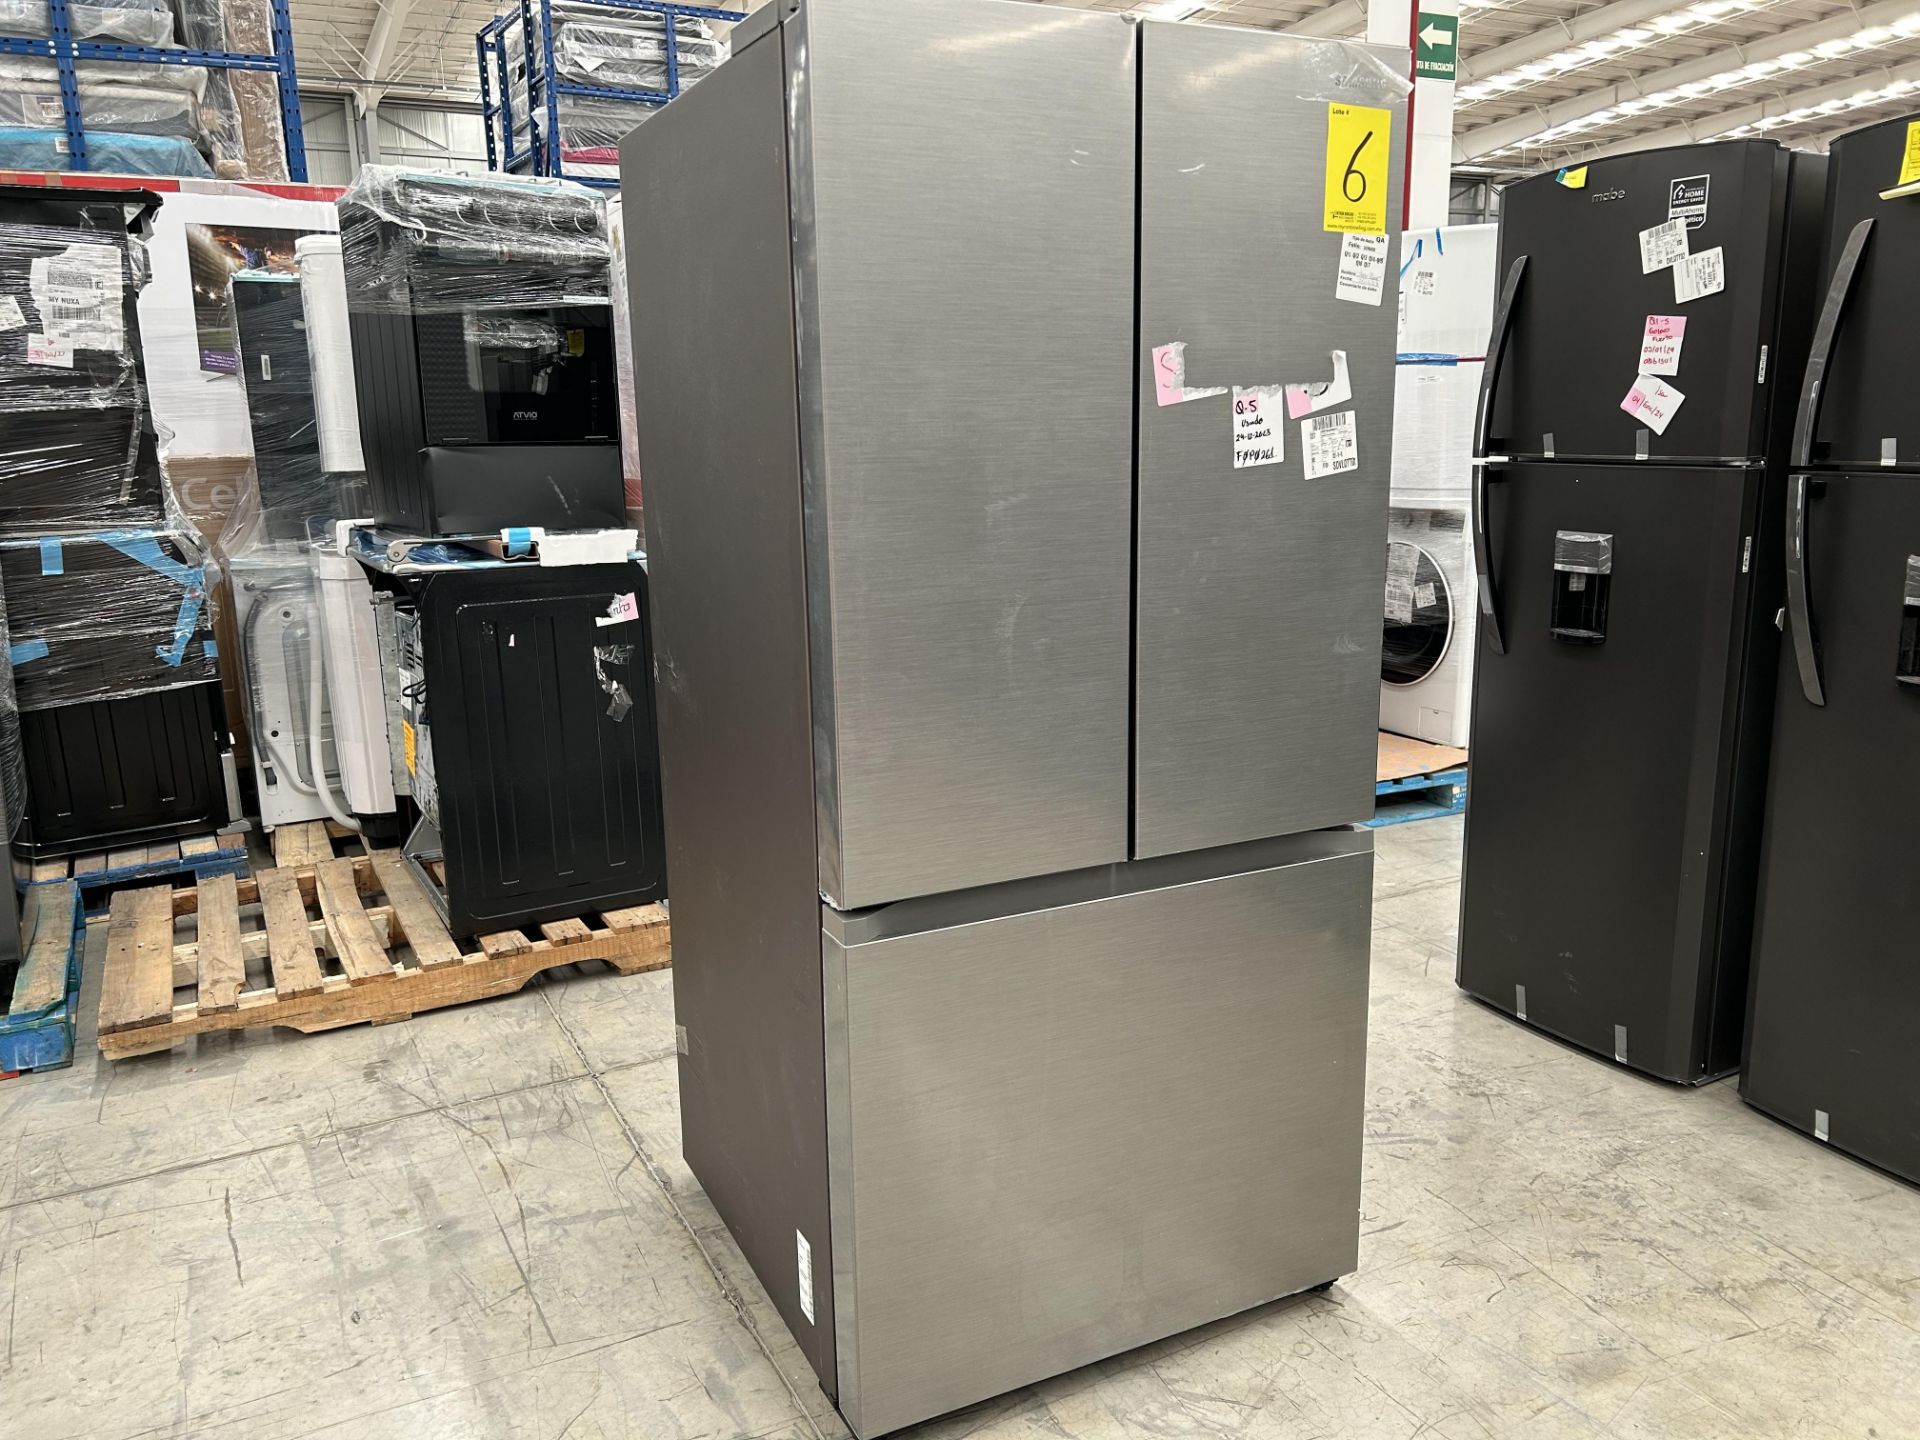 Lote de 1 Refrigerador Marca SAMSUNG, Modelo RF25C5151S9, Serie 0204N, Color GRIS (No se asegura su - Image 3 of 5